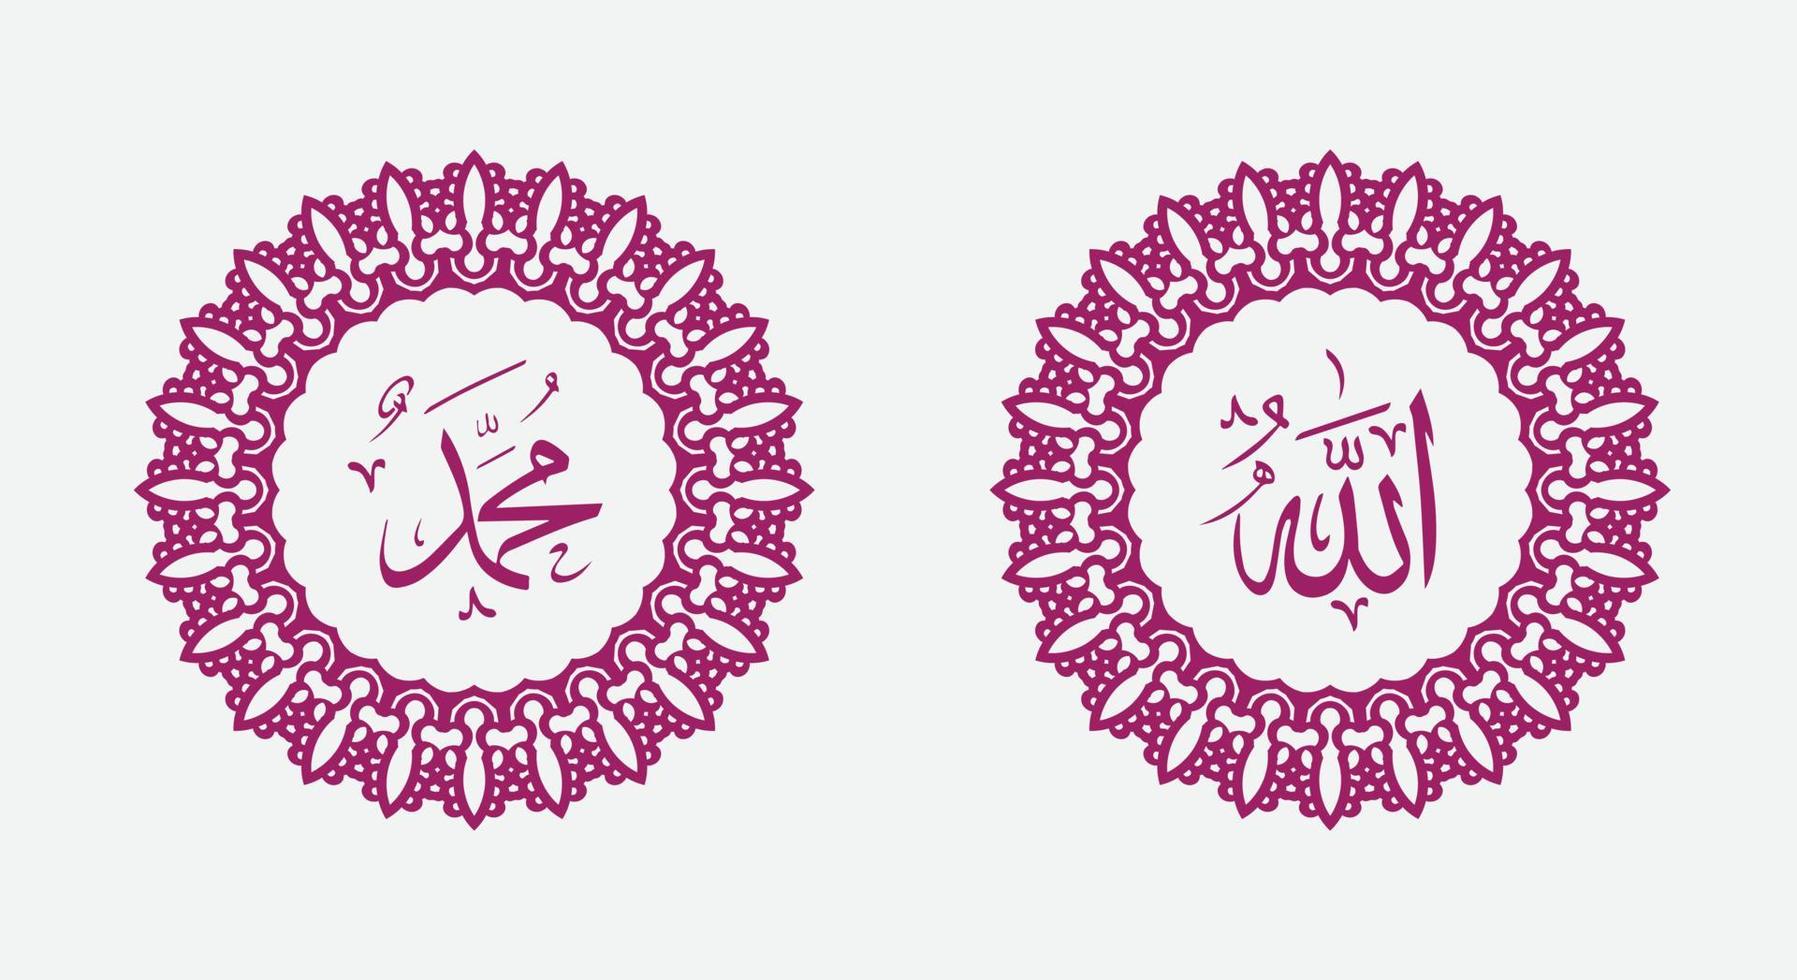 nome caligráfico islâmico de deus e nome do profeta muhamad com moldura de círculo e cor elegante vetor